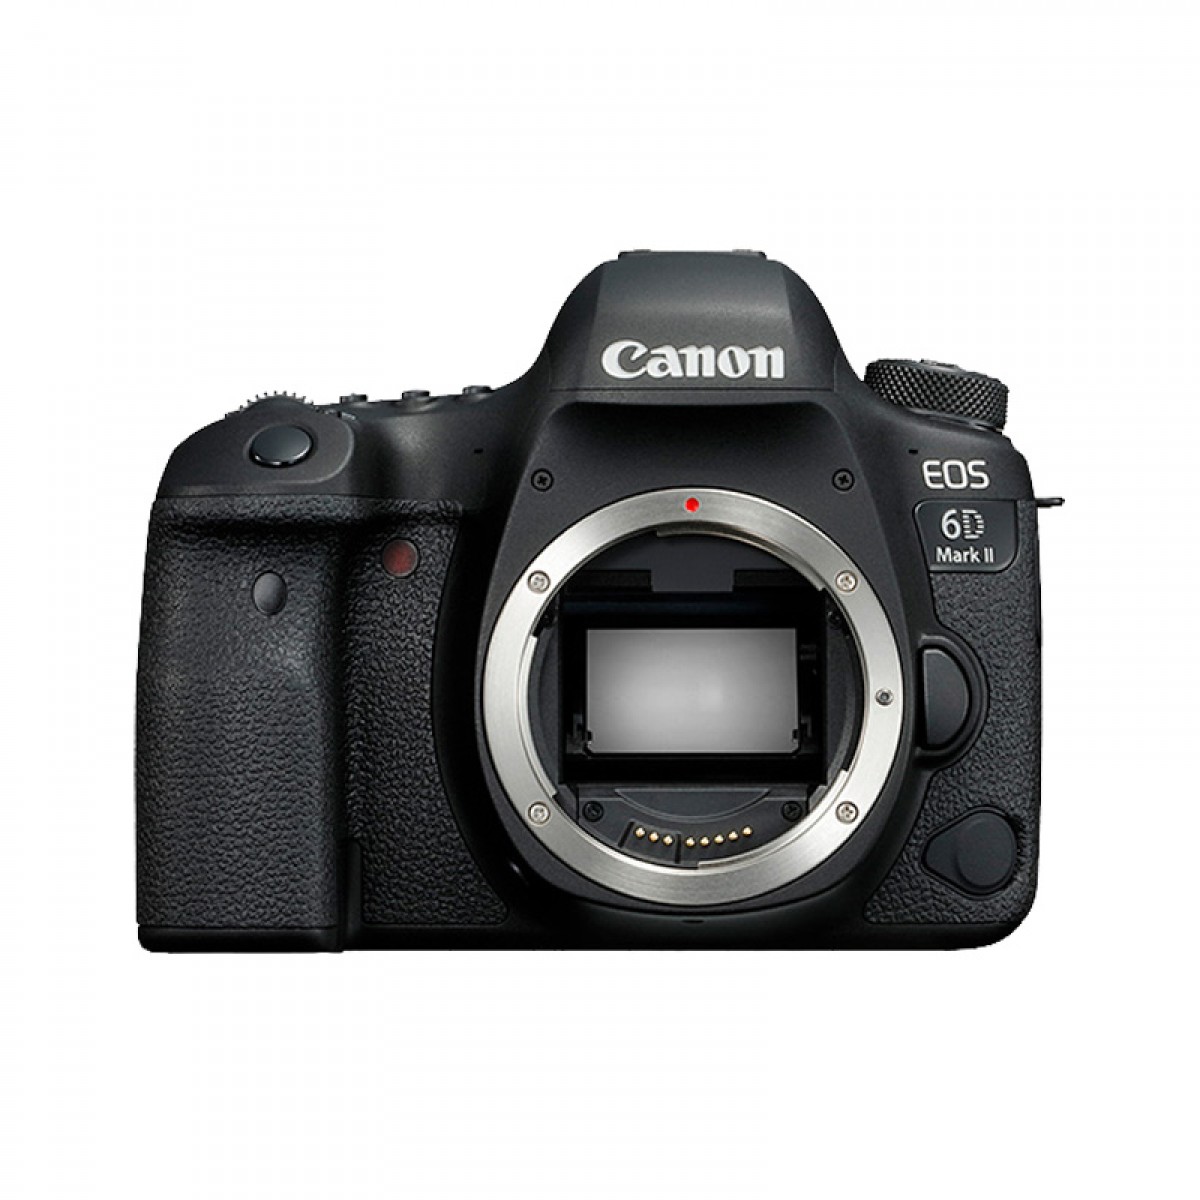 [旗舰店] Canon/佳能 6D2单反相机 EOS 6D Mark II全画幅专业级高清数码家用旅游照相机 6DII触摸对焦翻屏自拍WIFI